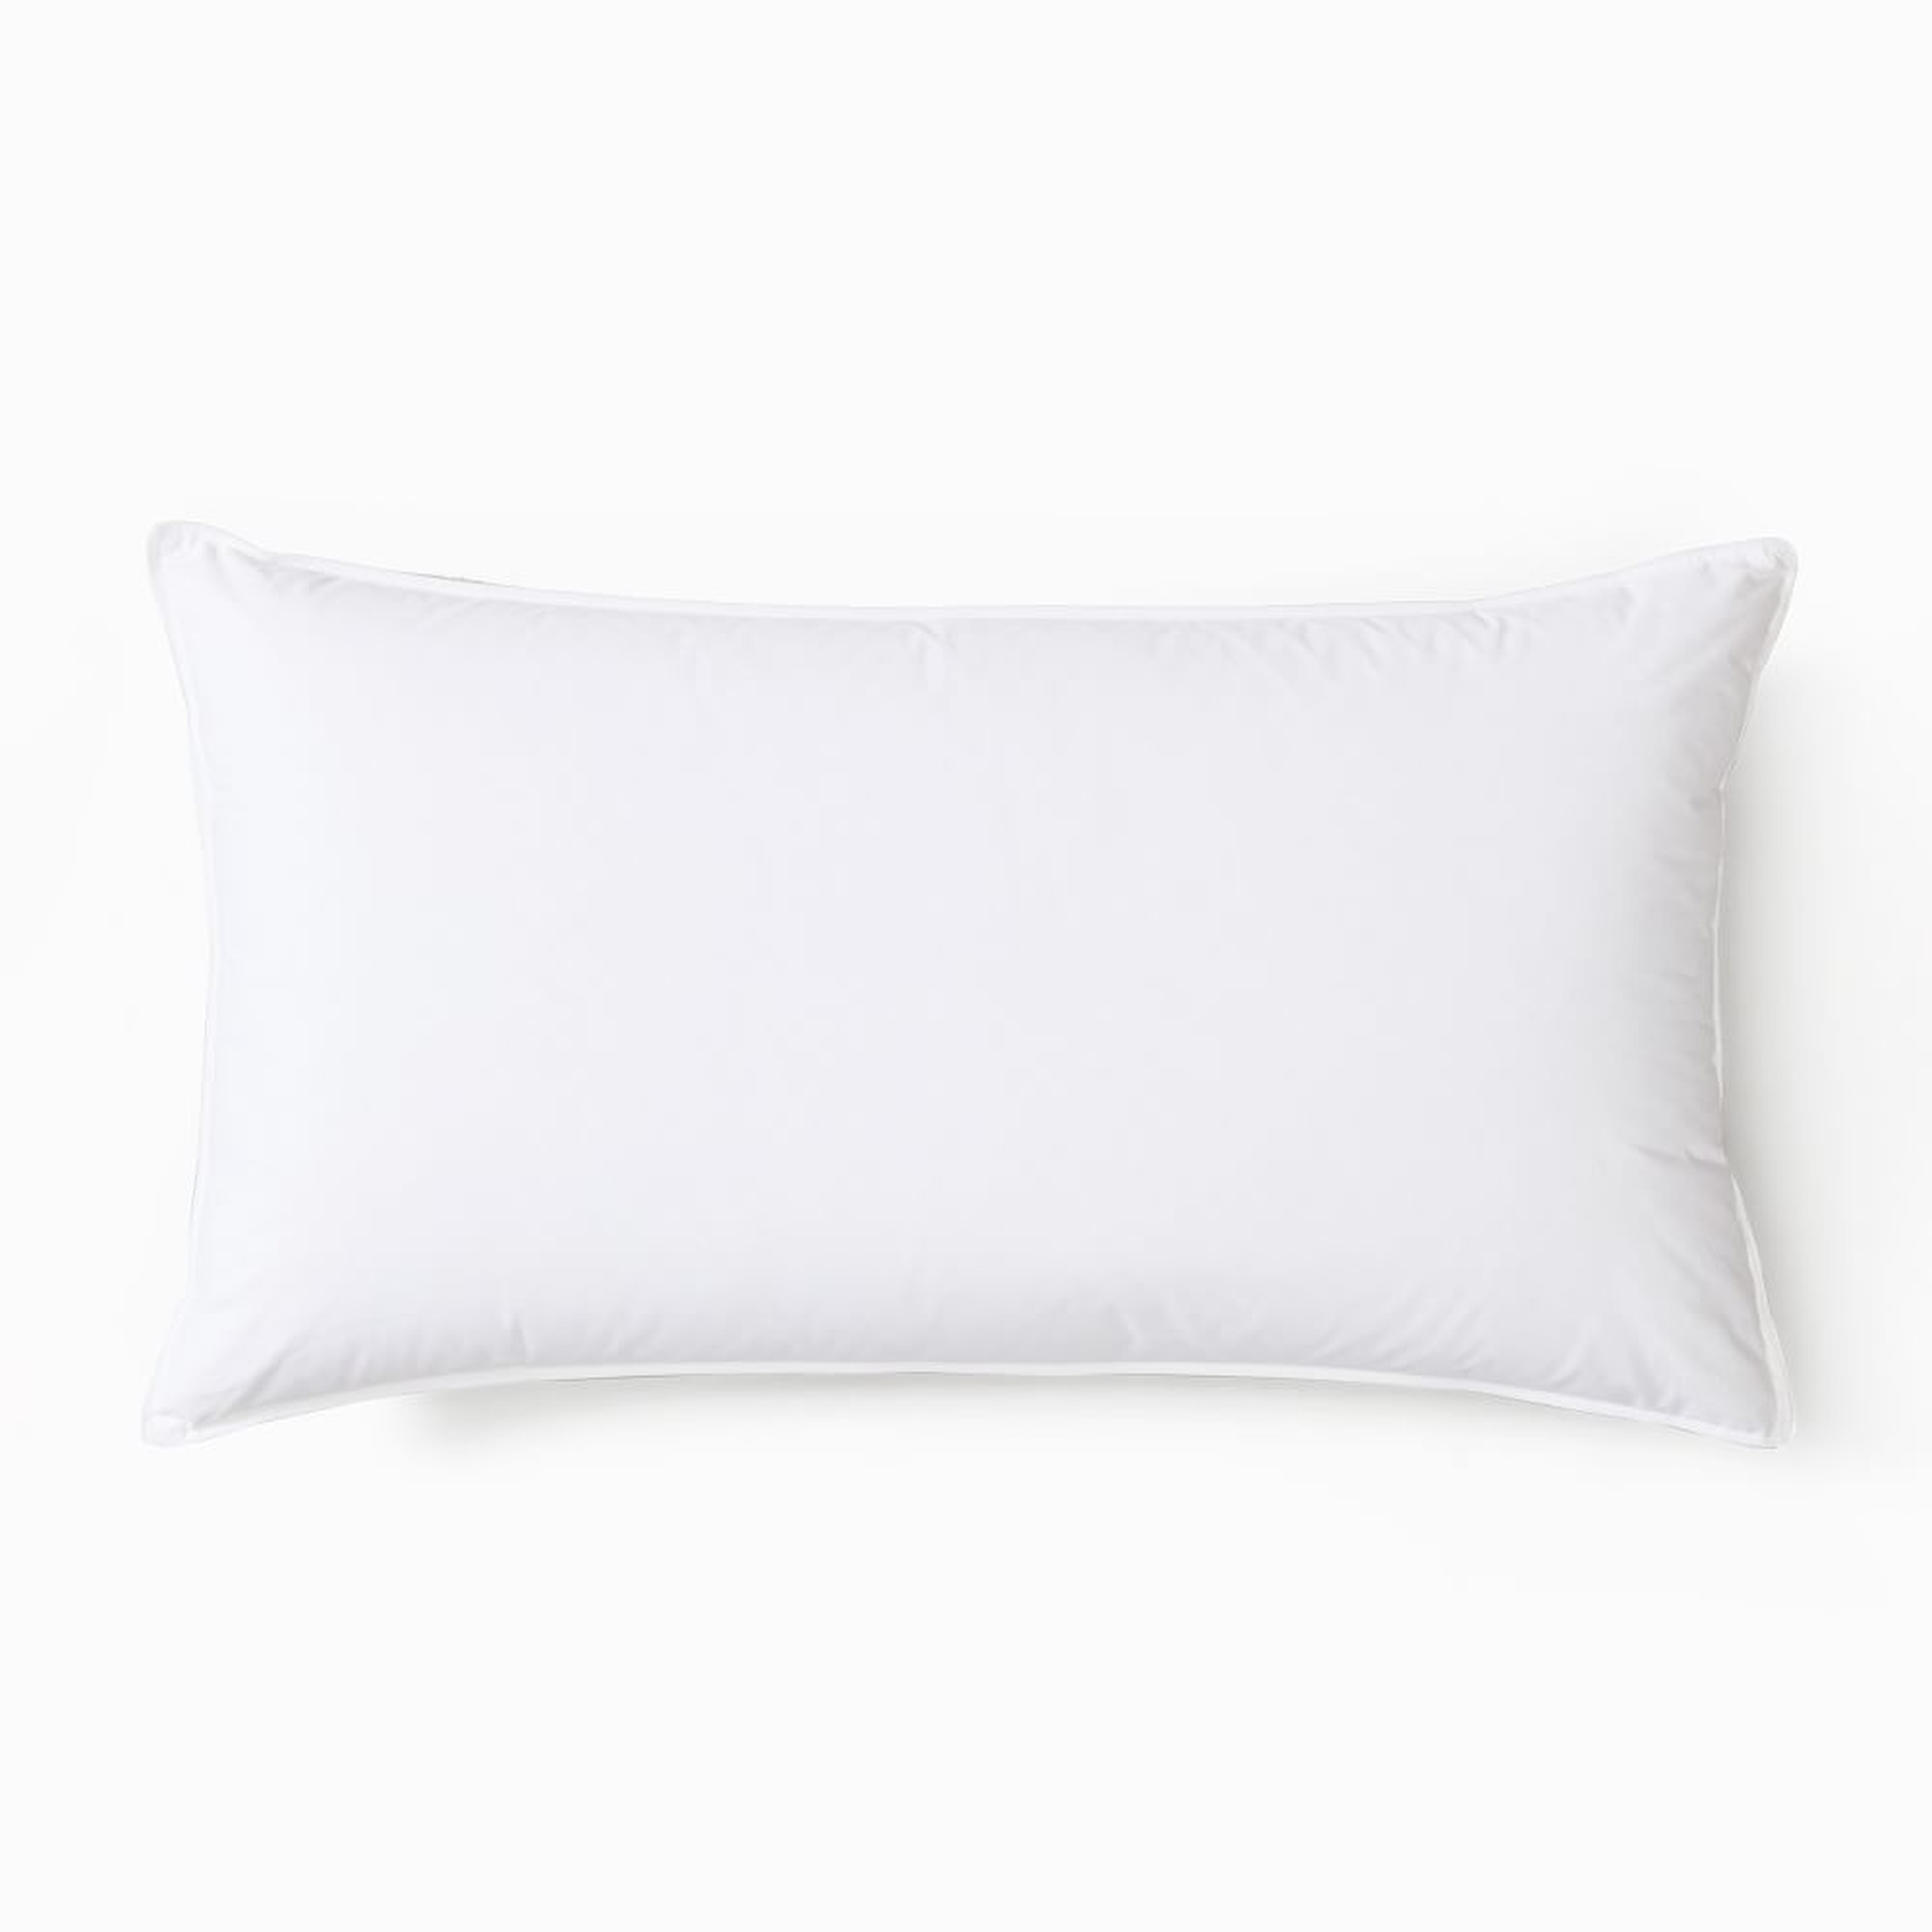 Down Alternative Pillow Insert, King Pillow, Medium - West Elm